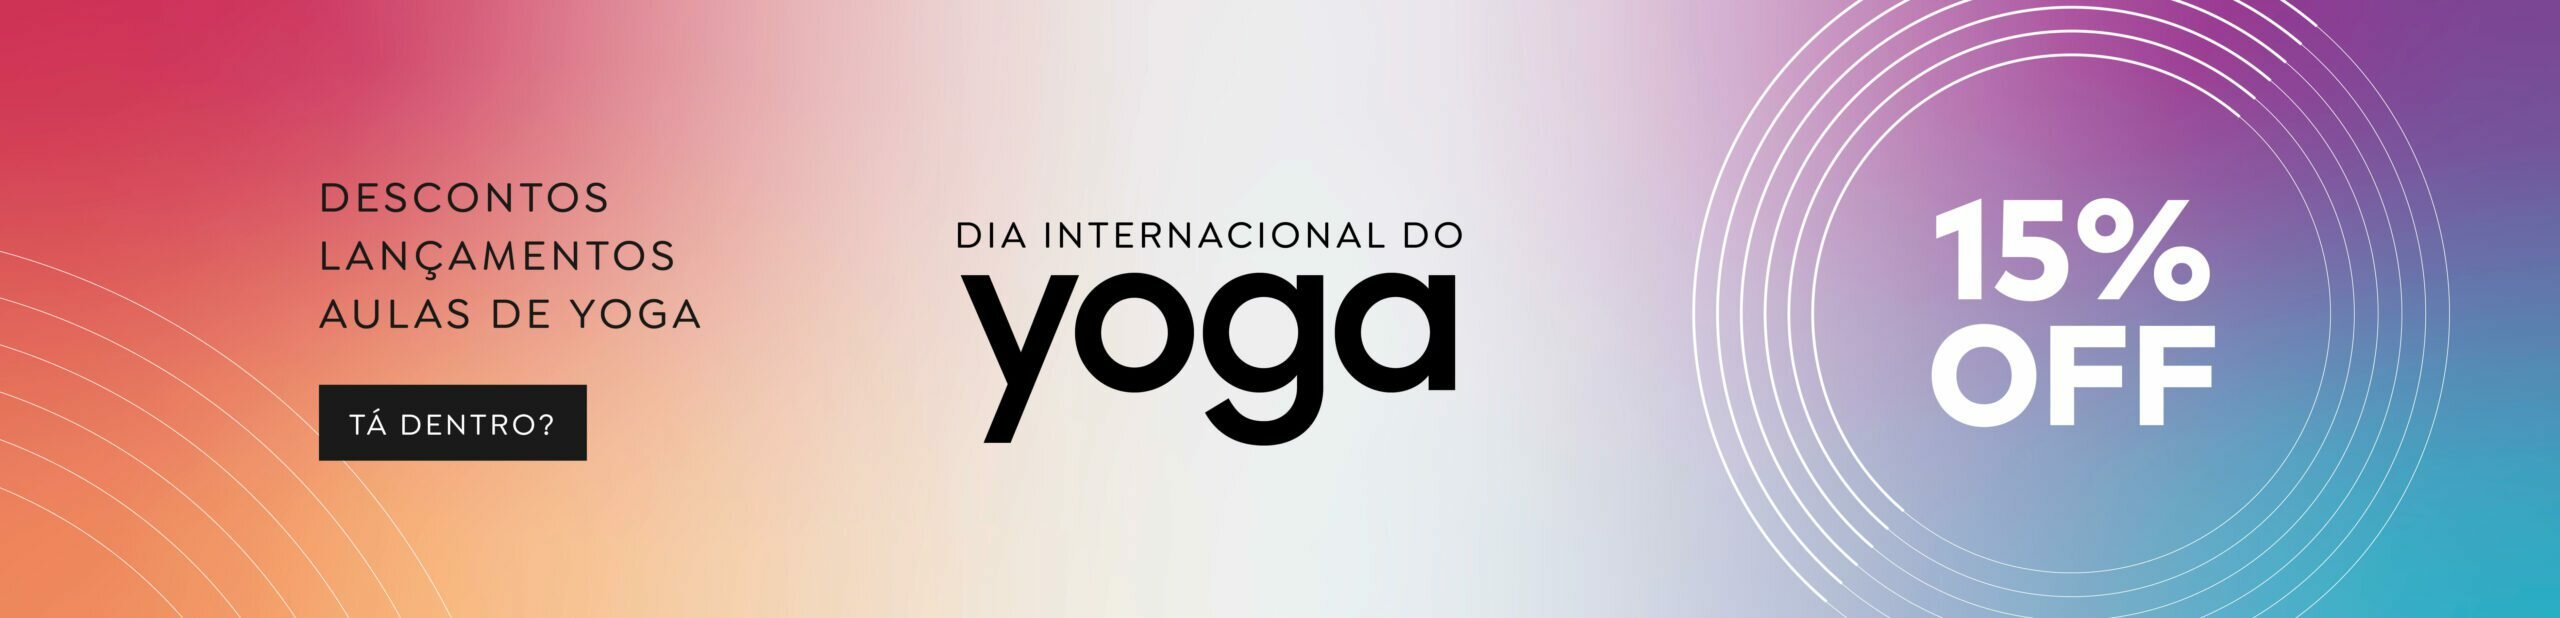 Dia Internacional do Yoga 3